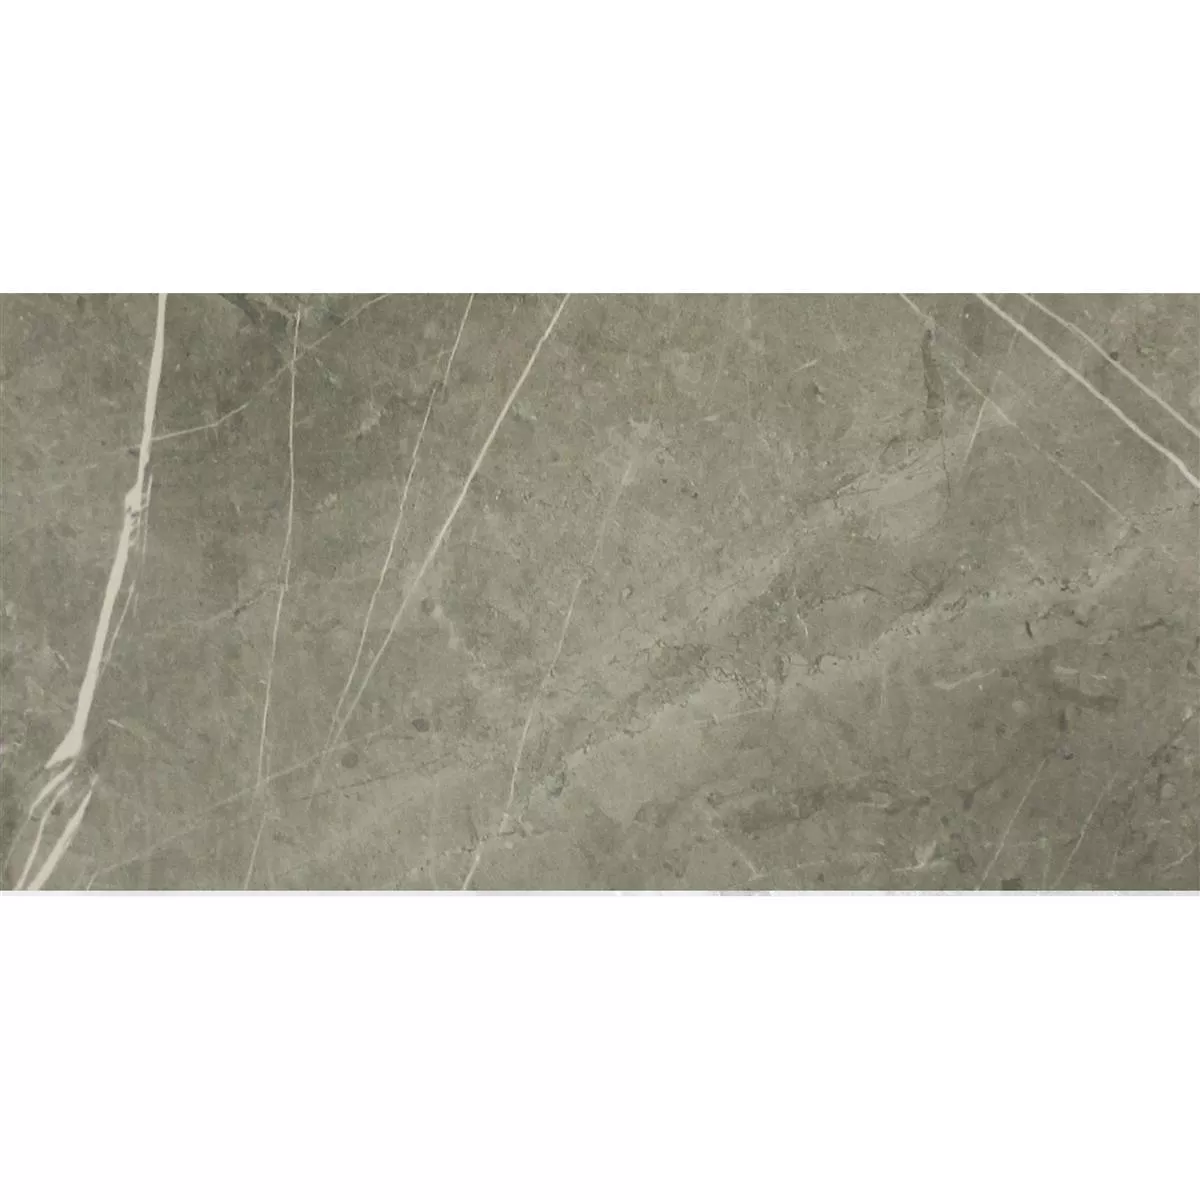 Πλακάκια Δαπέδου Astara Eμφάνιση Φυσικής Πέτρας Αμεμπτος Mist 30x60cm